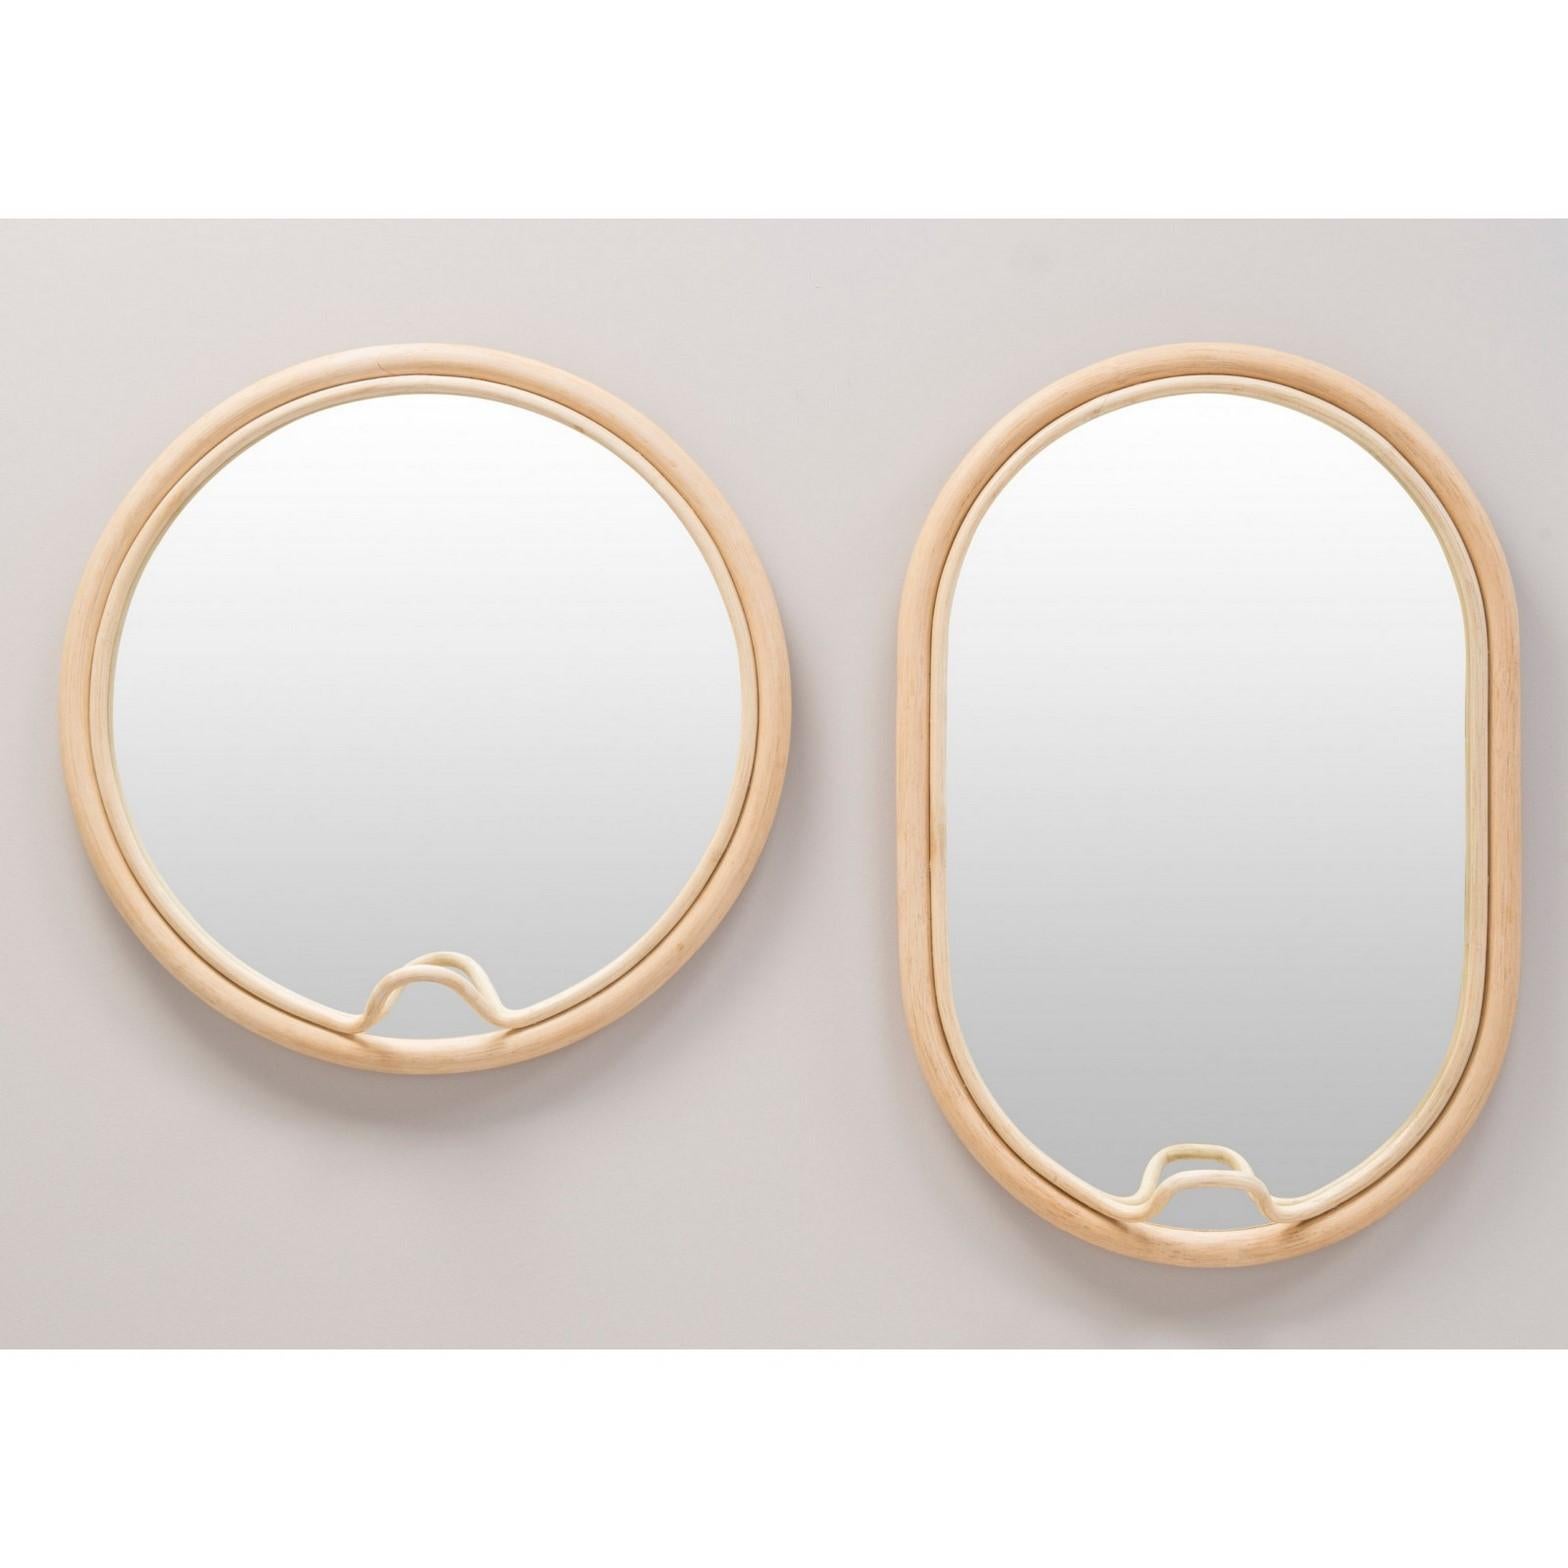 Modern French Design Round Rattan Mirror